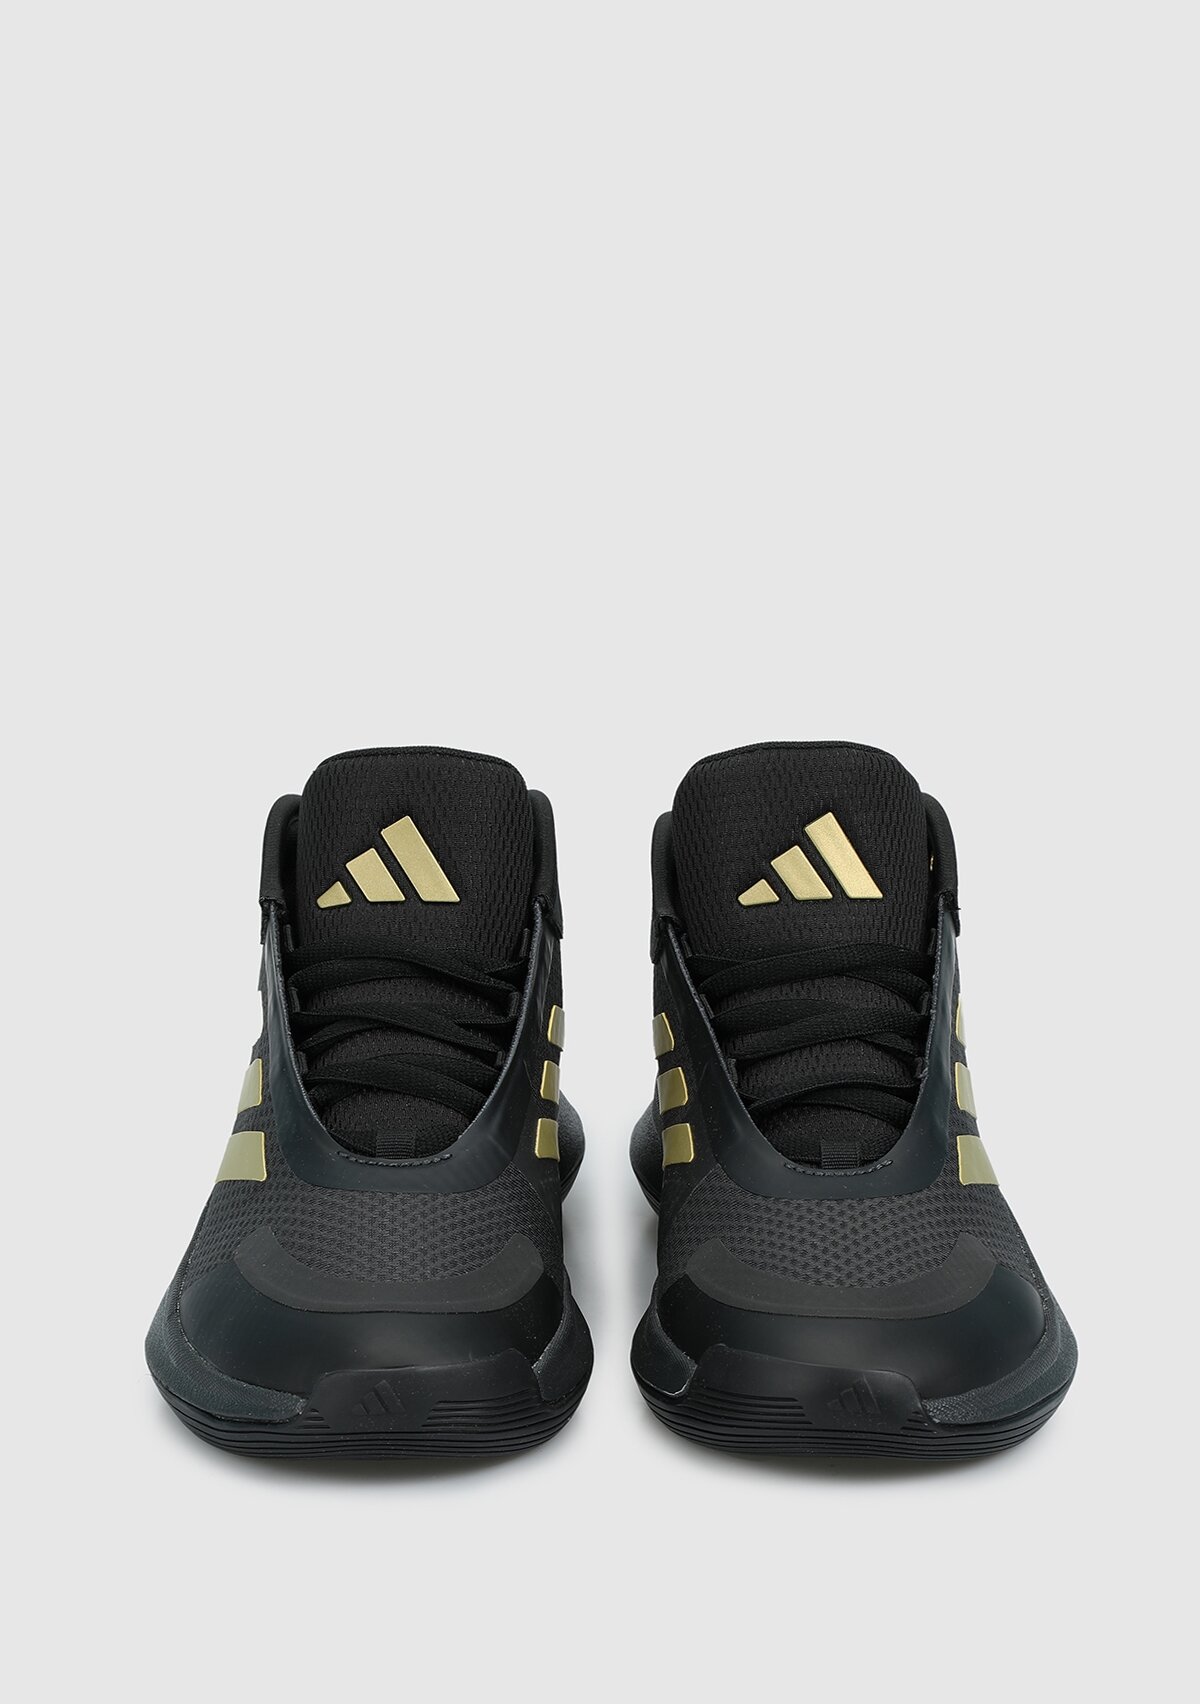 adidas Bounce Legends antrasit erkek basketbol Ayakkabısı ıe9278